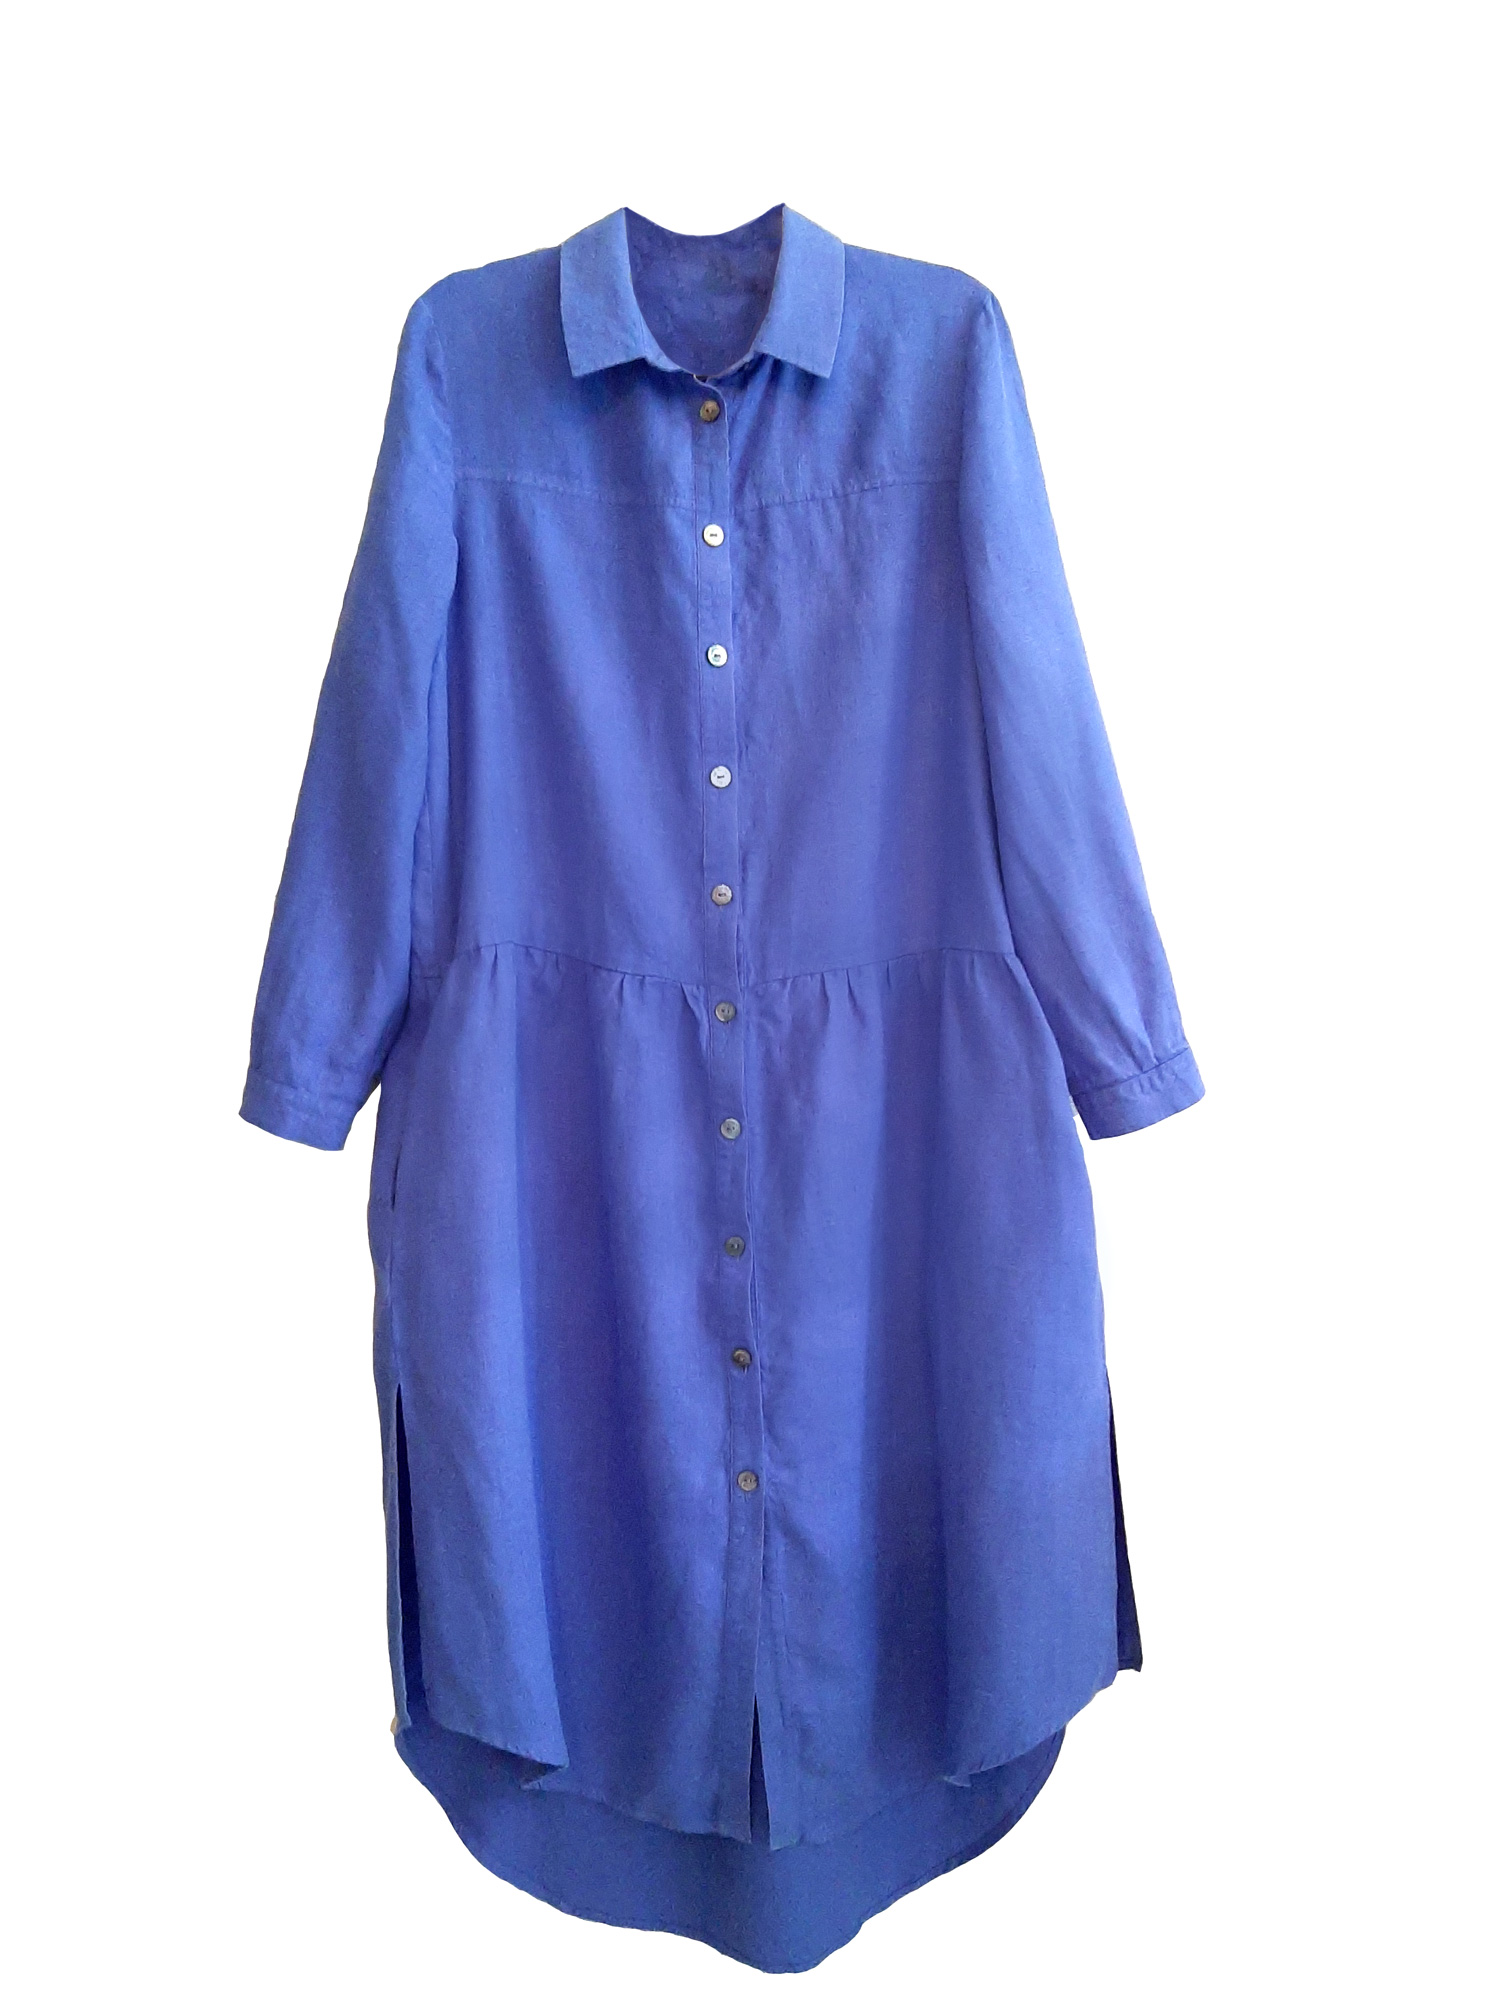 Льняное платье-рубашка Lungoparma Enzy - persian blue 9 150 руб - купить в шоуруме, магазине, доставка с примеркой по России, Москве